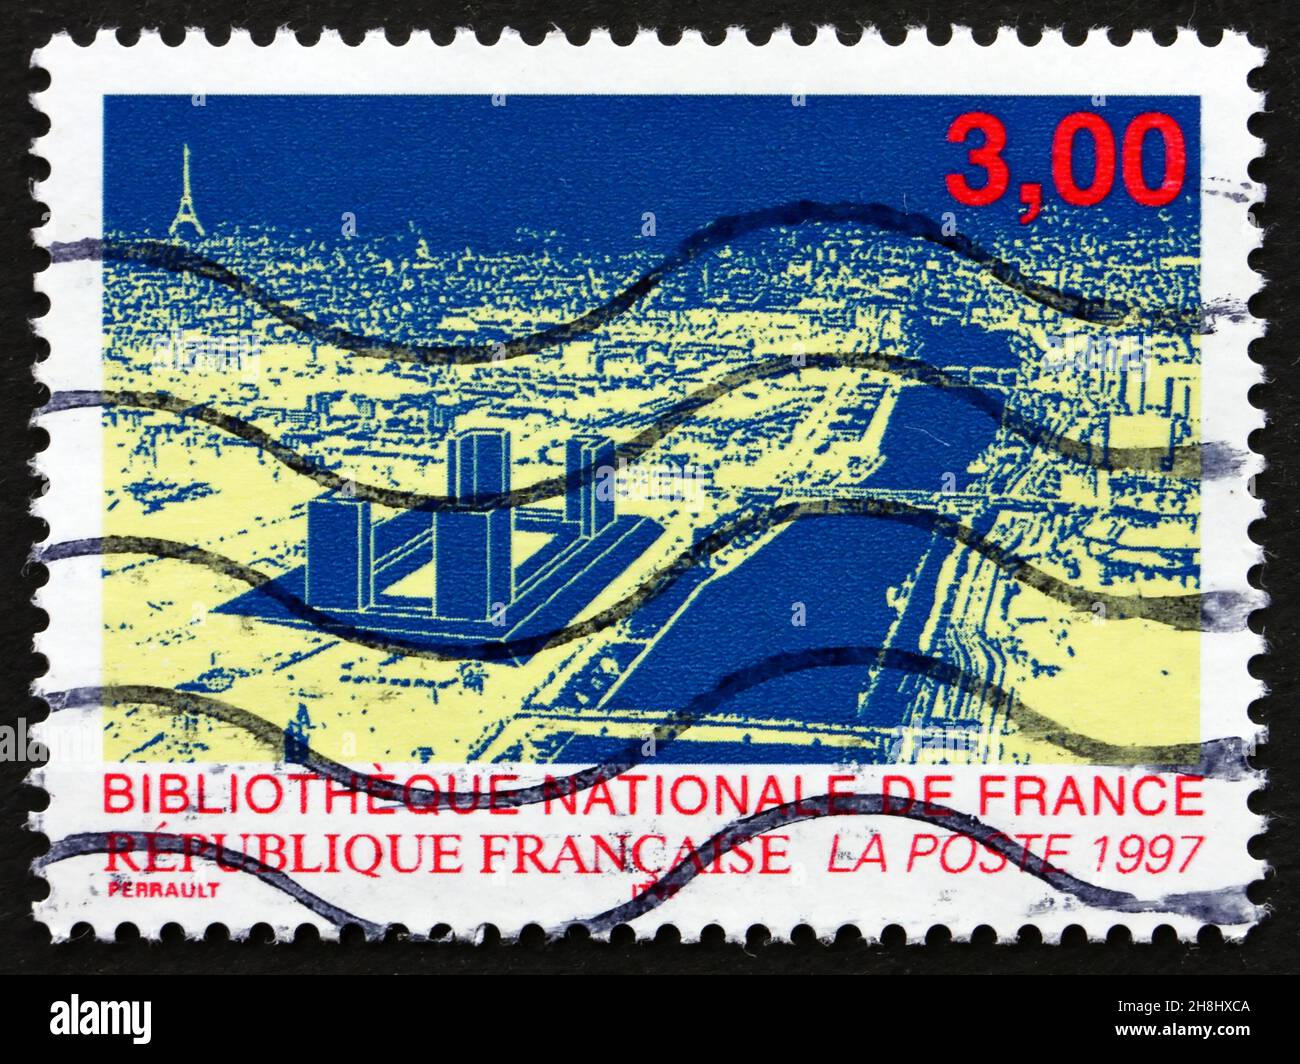 FRANKREICH - UM 1996: Eine in Frankreich gedruckte Briefmarke zeigt die Neue Nationalbibliothek von Frankreich, Paris, um 1996 Stockfoto